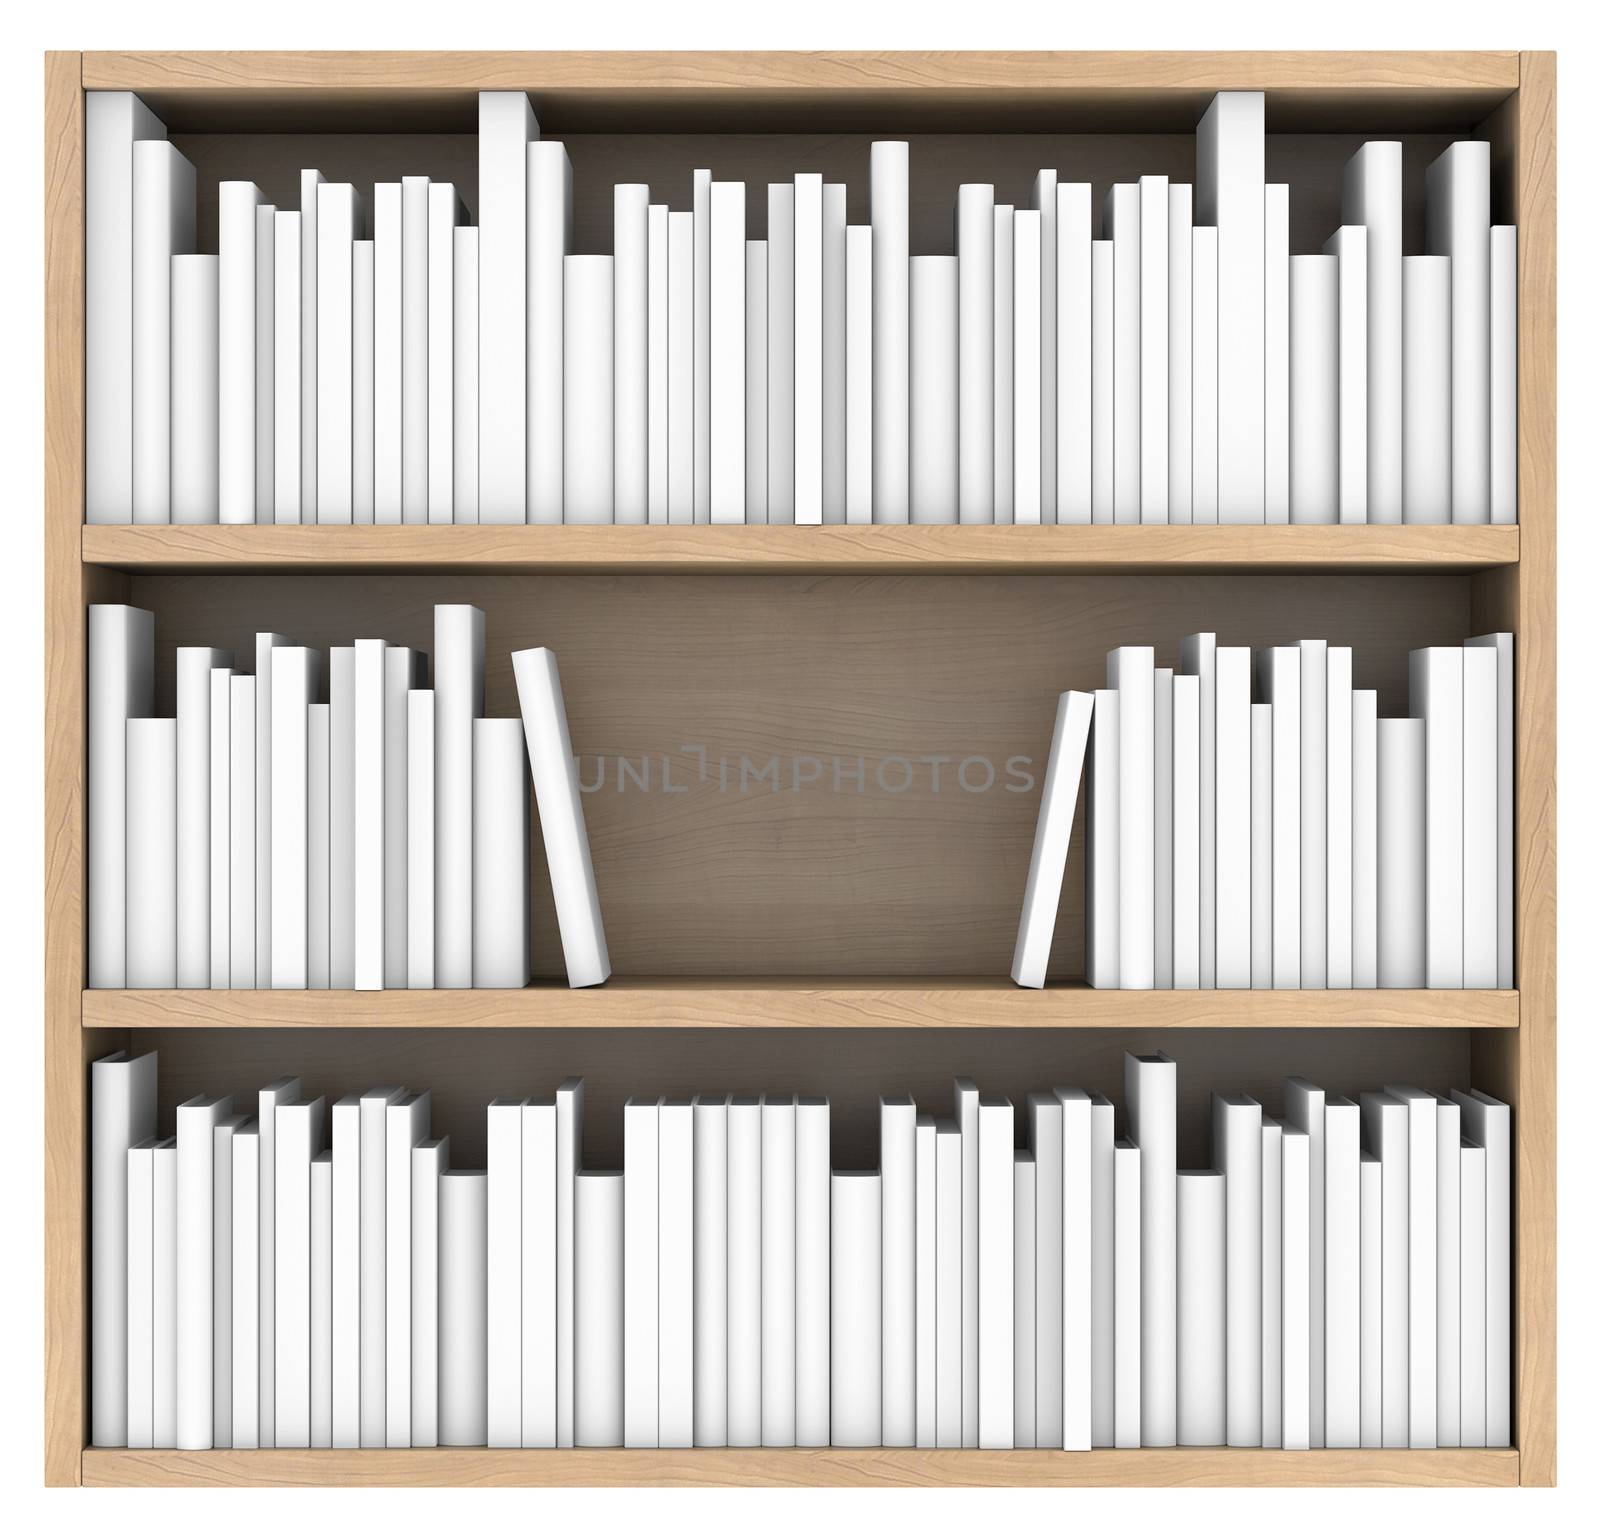 Bookshelf. 3d render isolated on white background